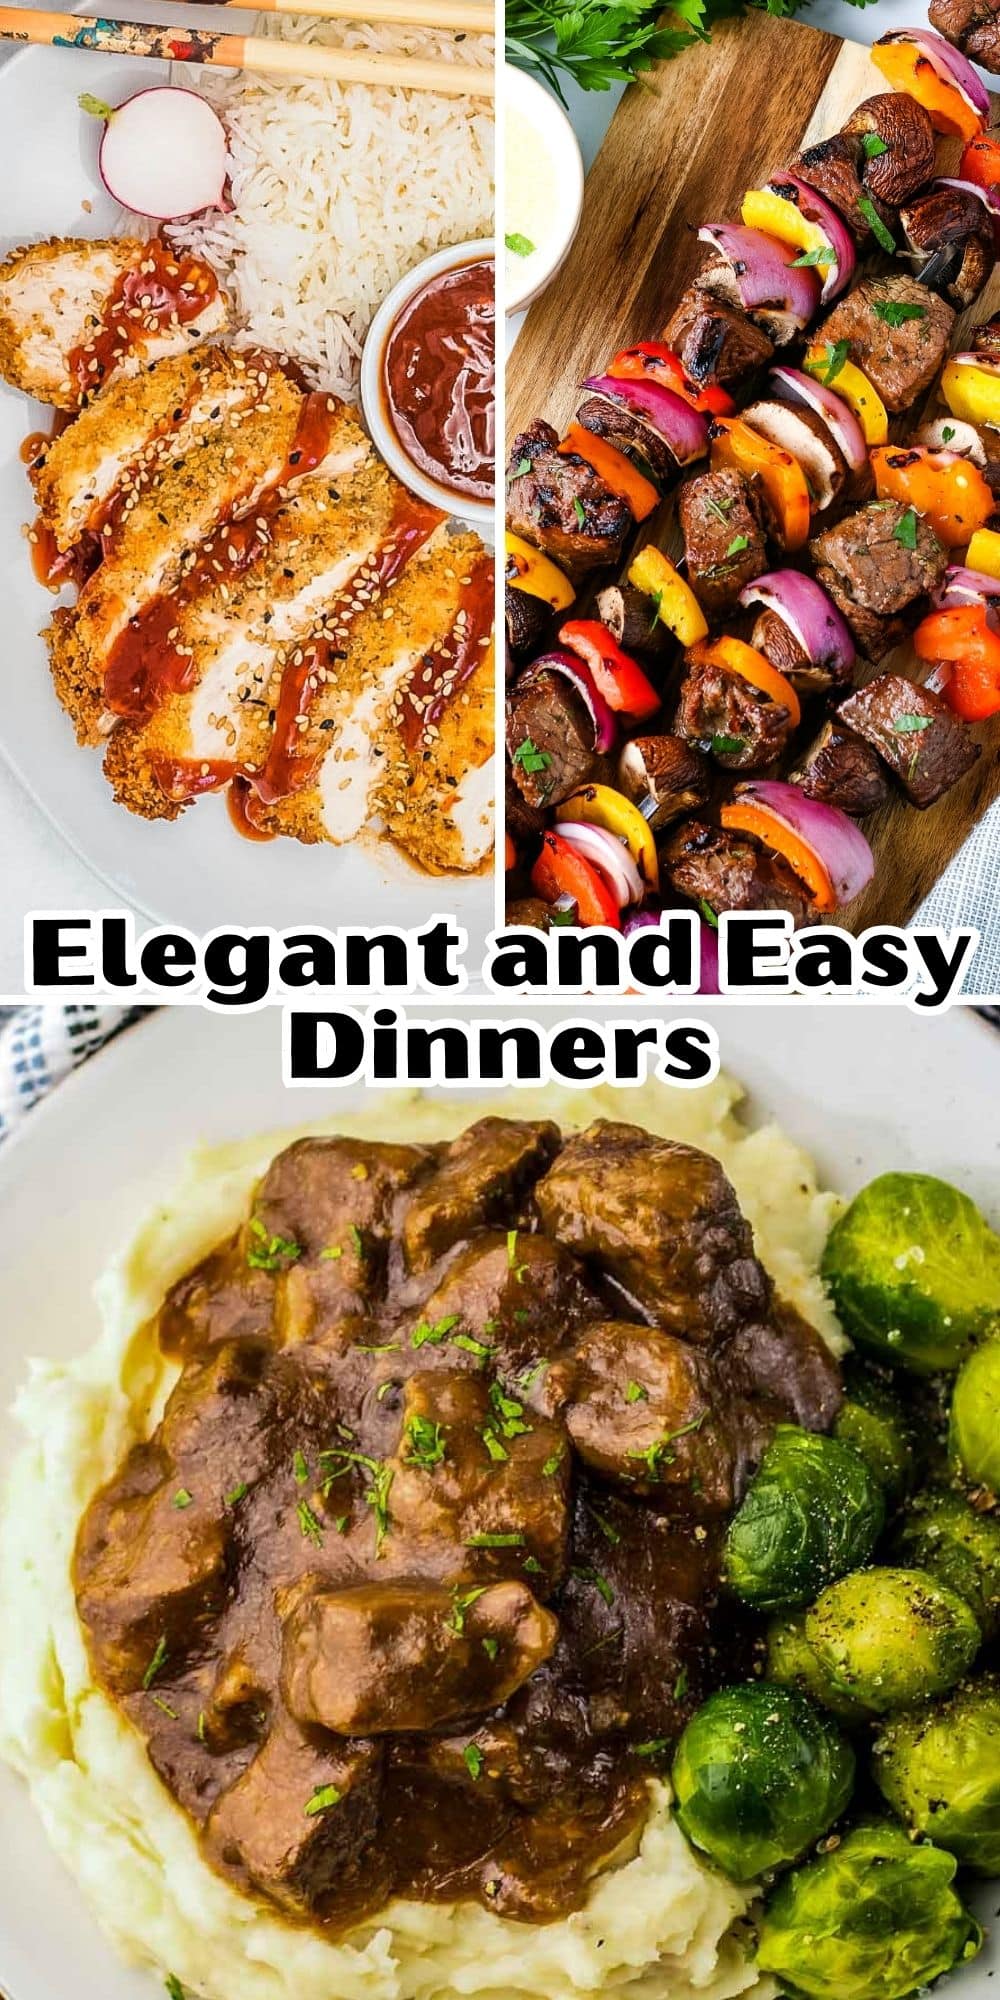 Elegant dinners made easy.